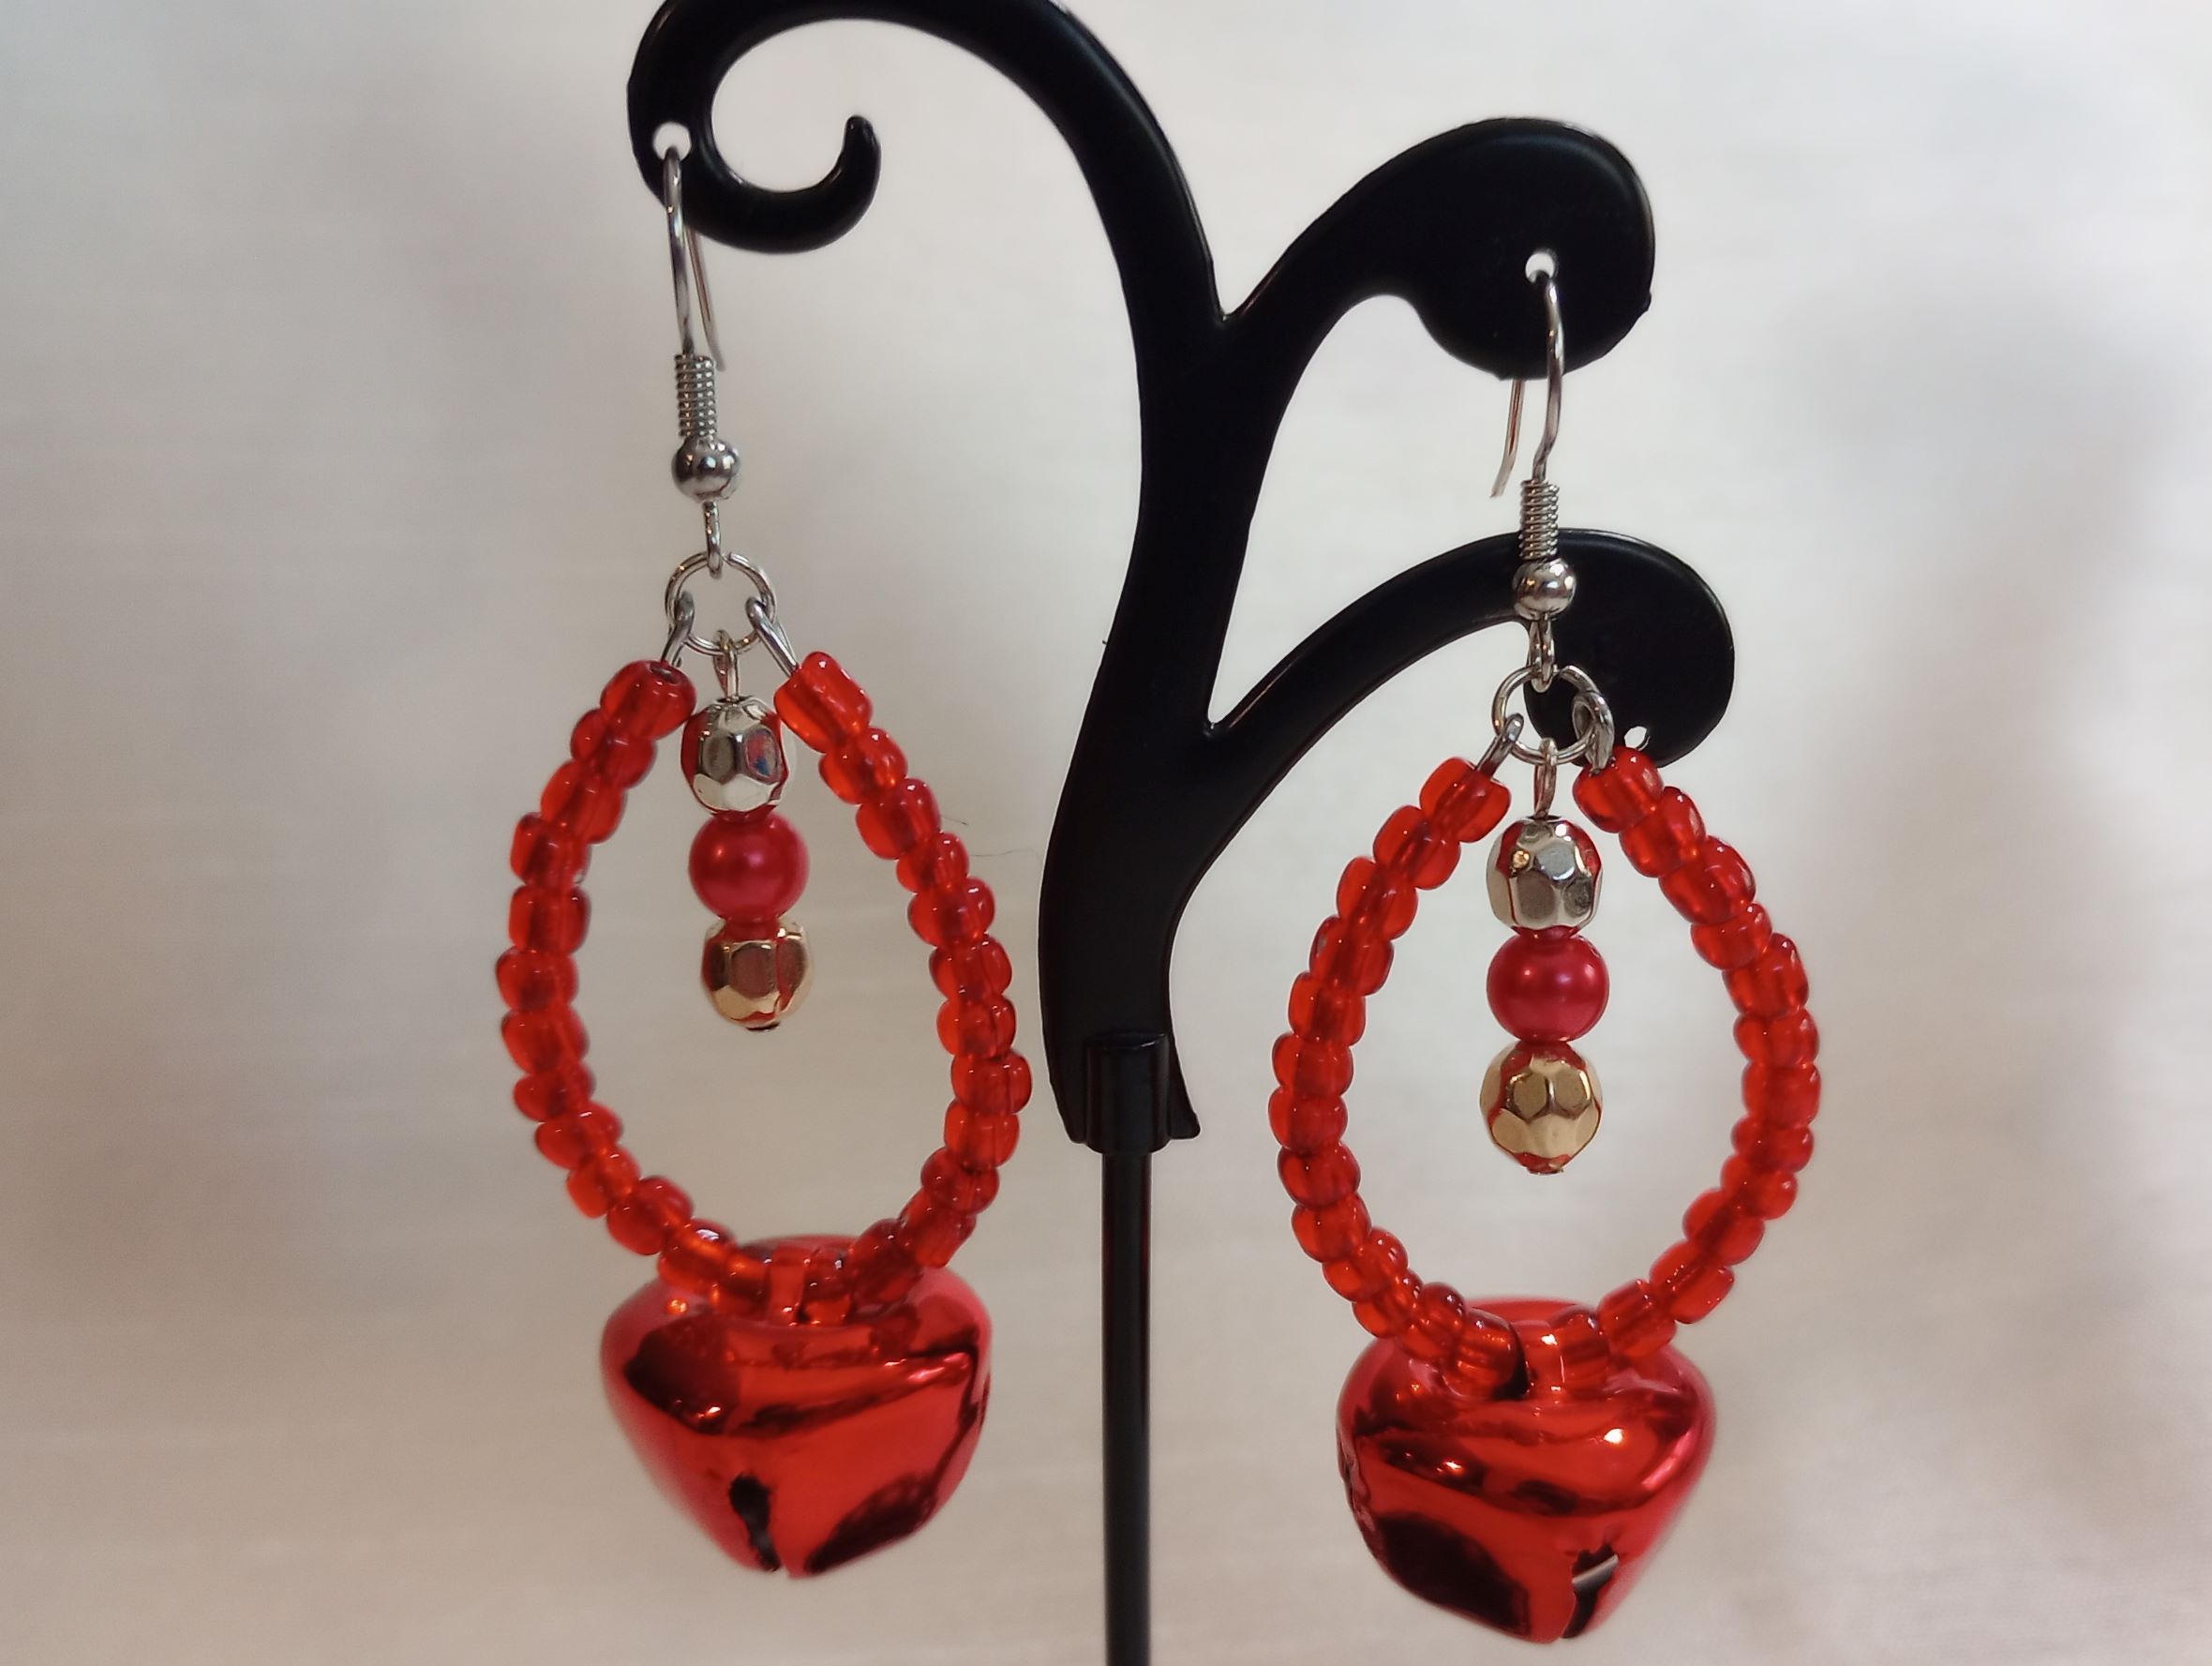 A – Red Jingle Bell Earrings